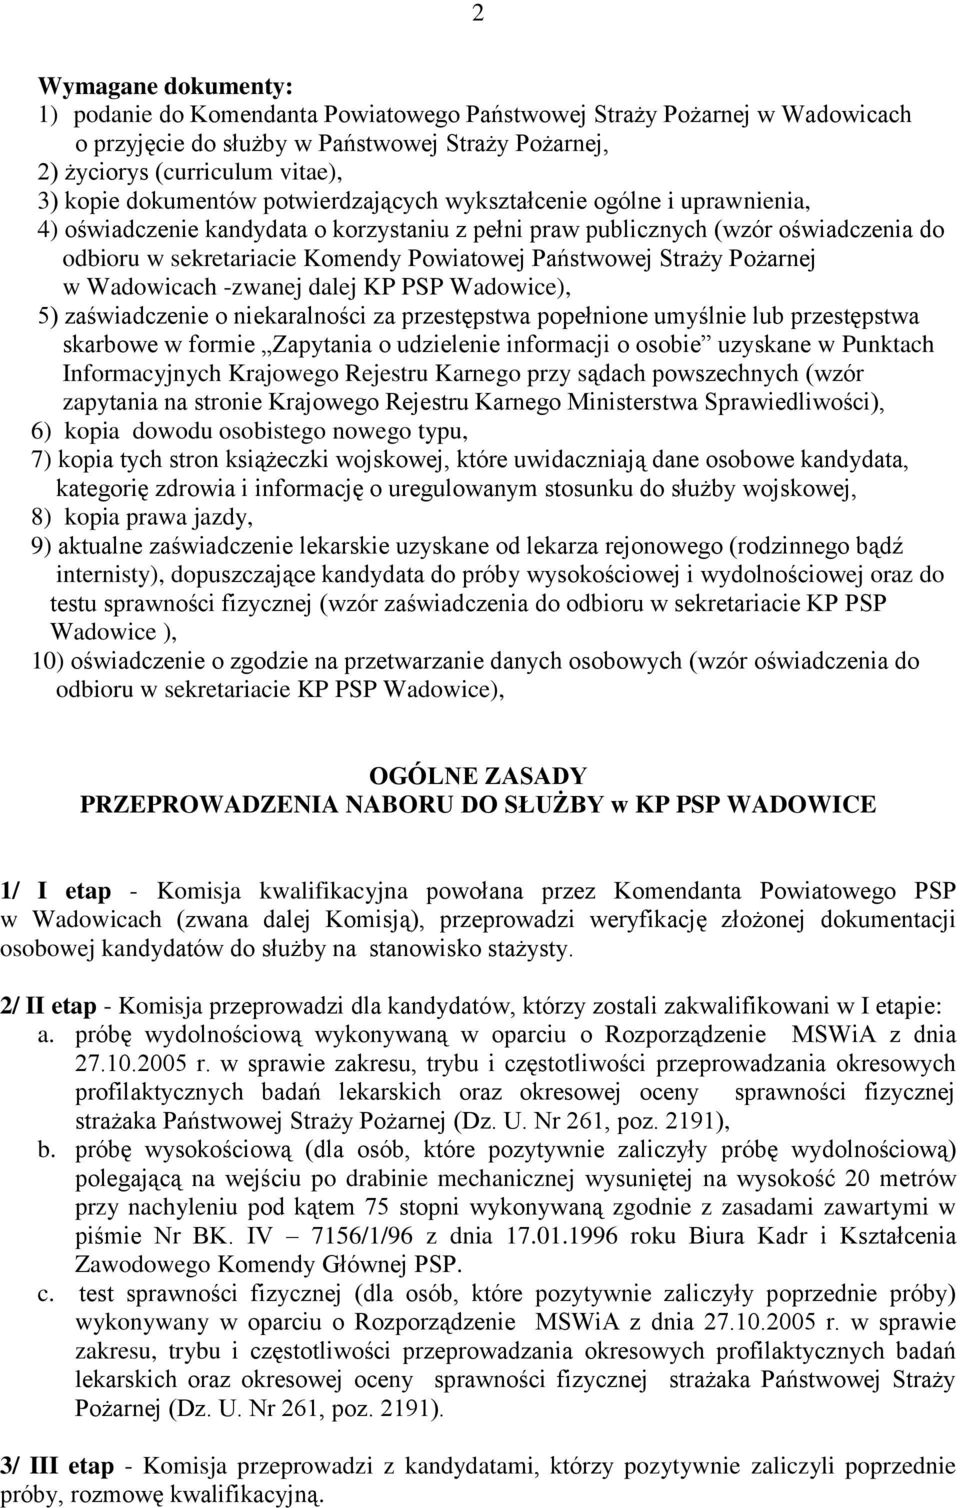 Państwowej Straży Pożarnej w Wadowicach -zwanej dalej KP PSP Wadowice), 5) zaświadczenie o niekaralności za przestępstwa popełnione umyślnie lub przestępstwa skarbowe w formie Zapytania o udzielenie